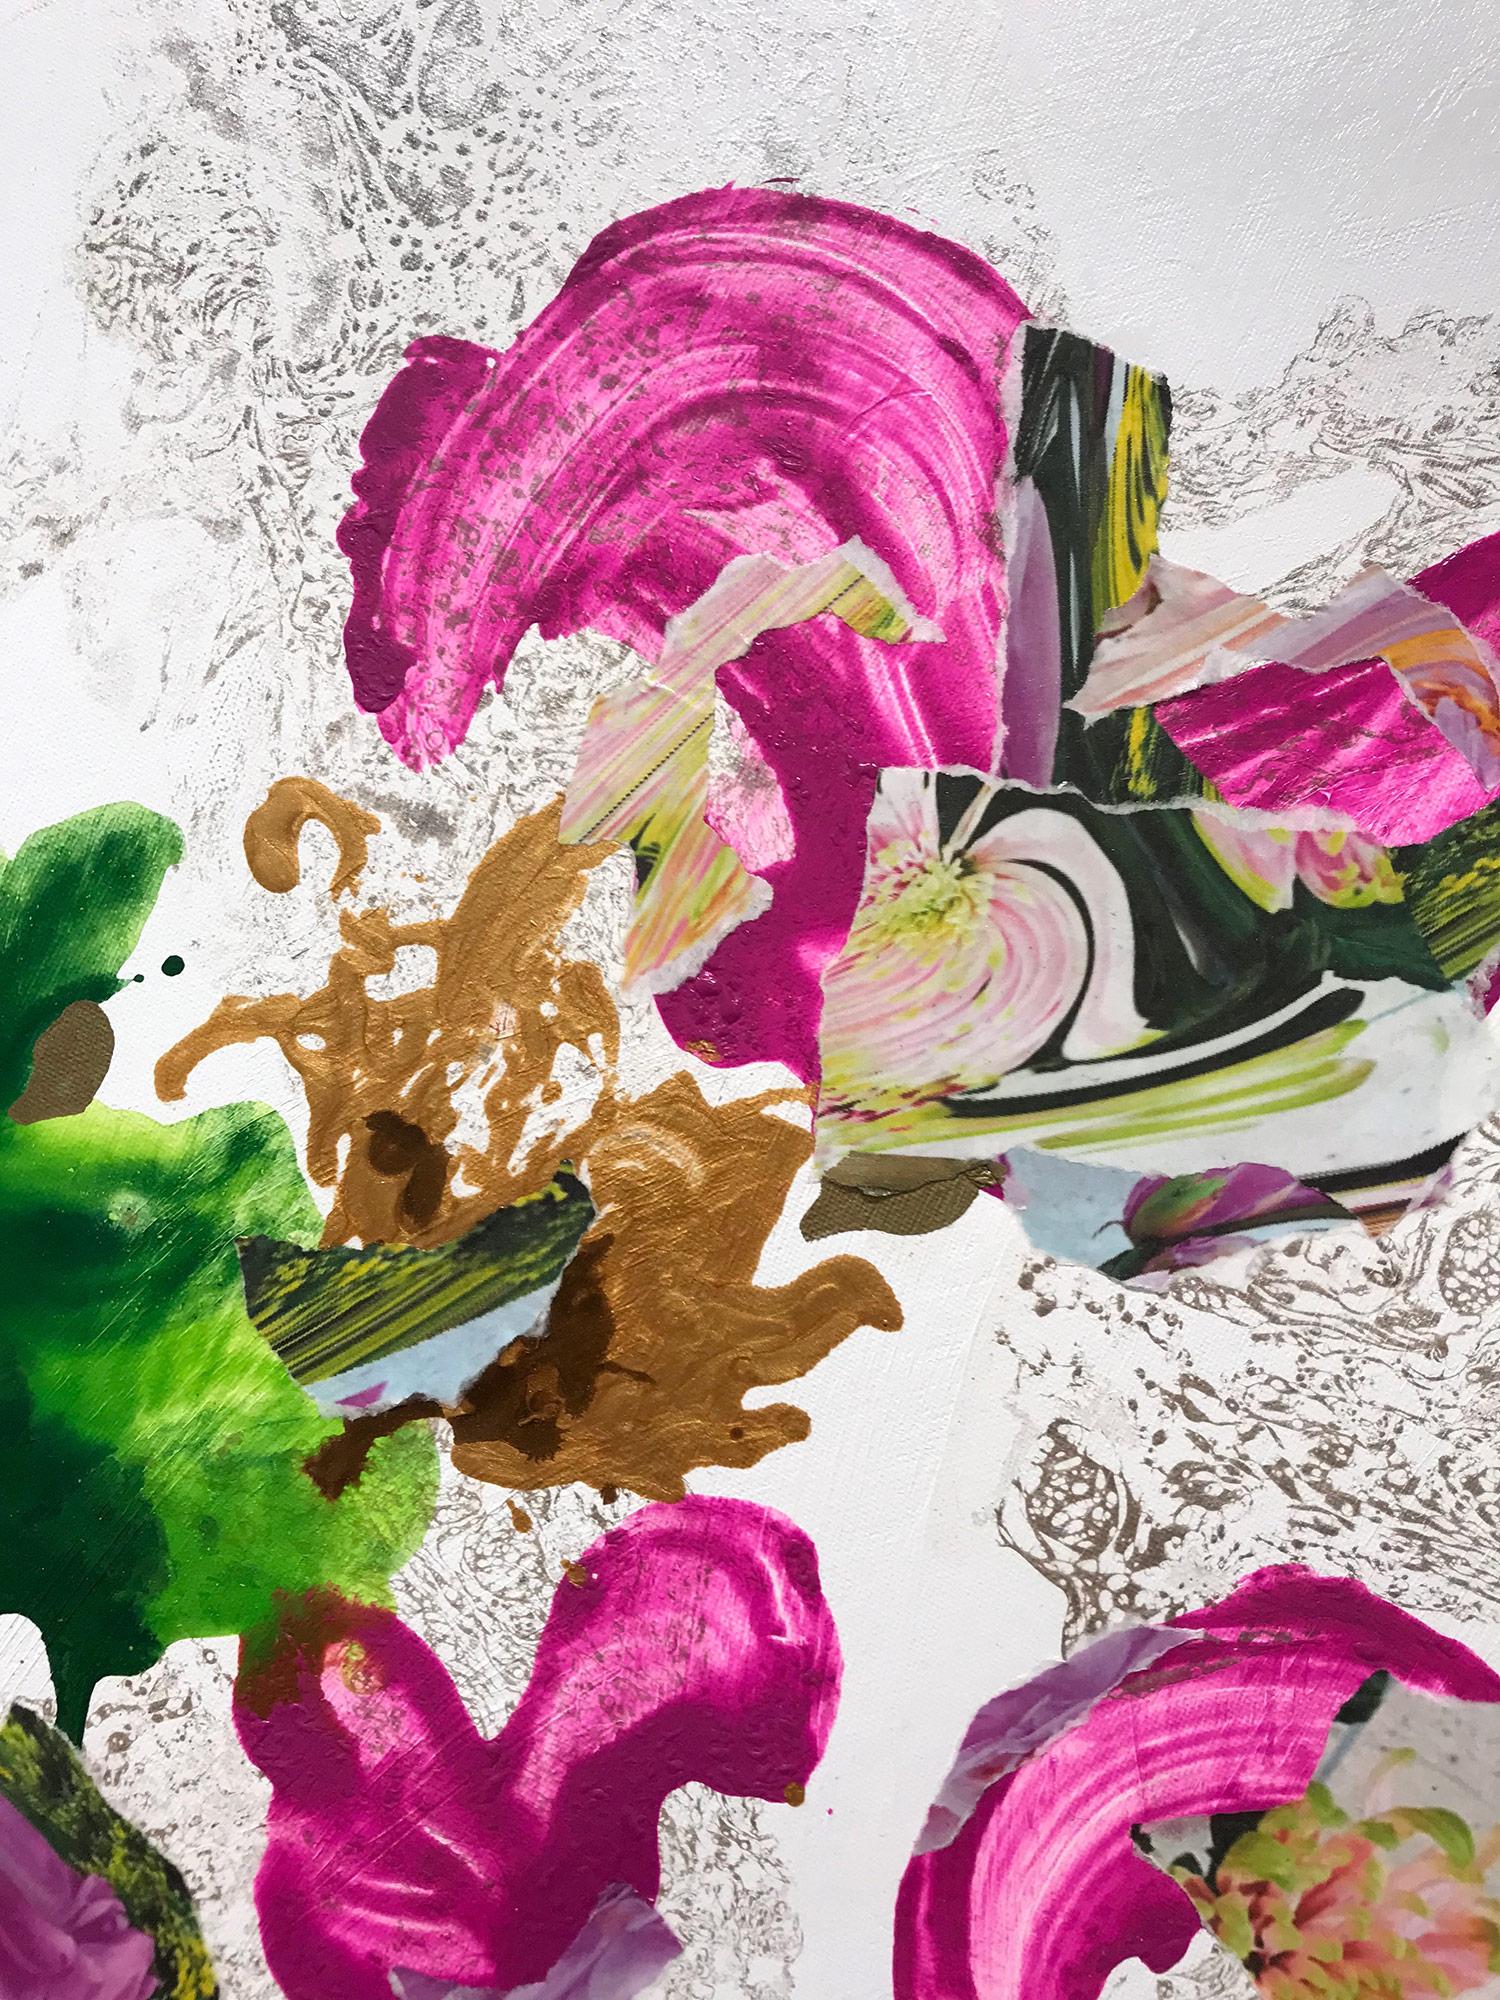 Ein dramatisches kreisförmiges Gemälde in Mischtechnik auf Leinwand mit wunderbaren Details und Knalleffekten in Rosa, Grün und Gold. Wir sind fasziniert von dem starken Kontrast, da die Form der Farbe einzigartige und verblüffende Formen annimmt.